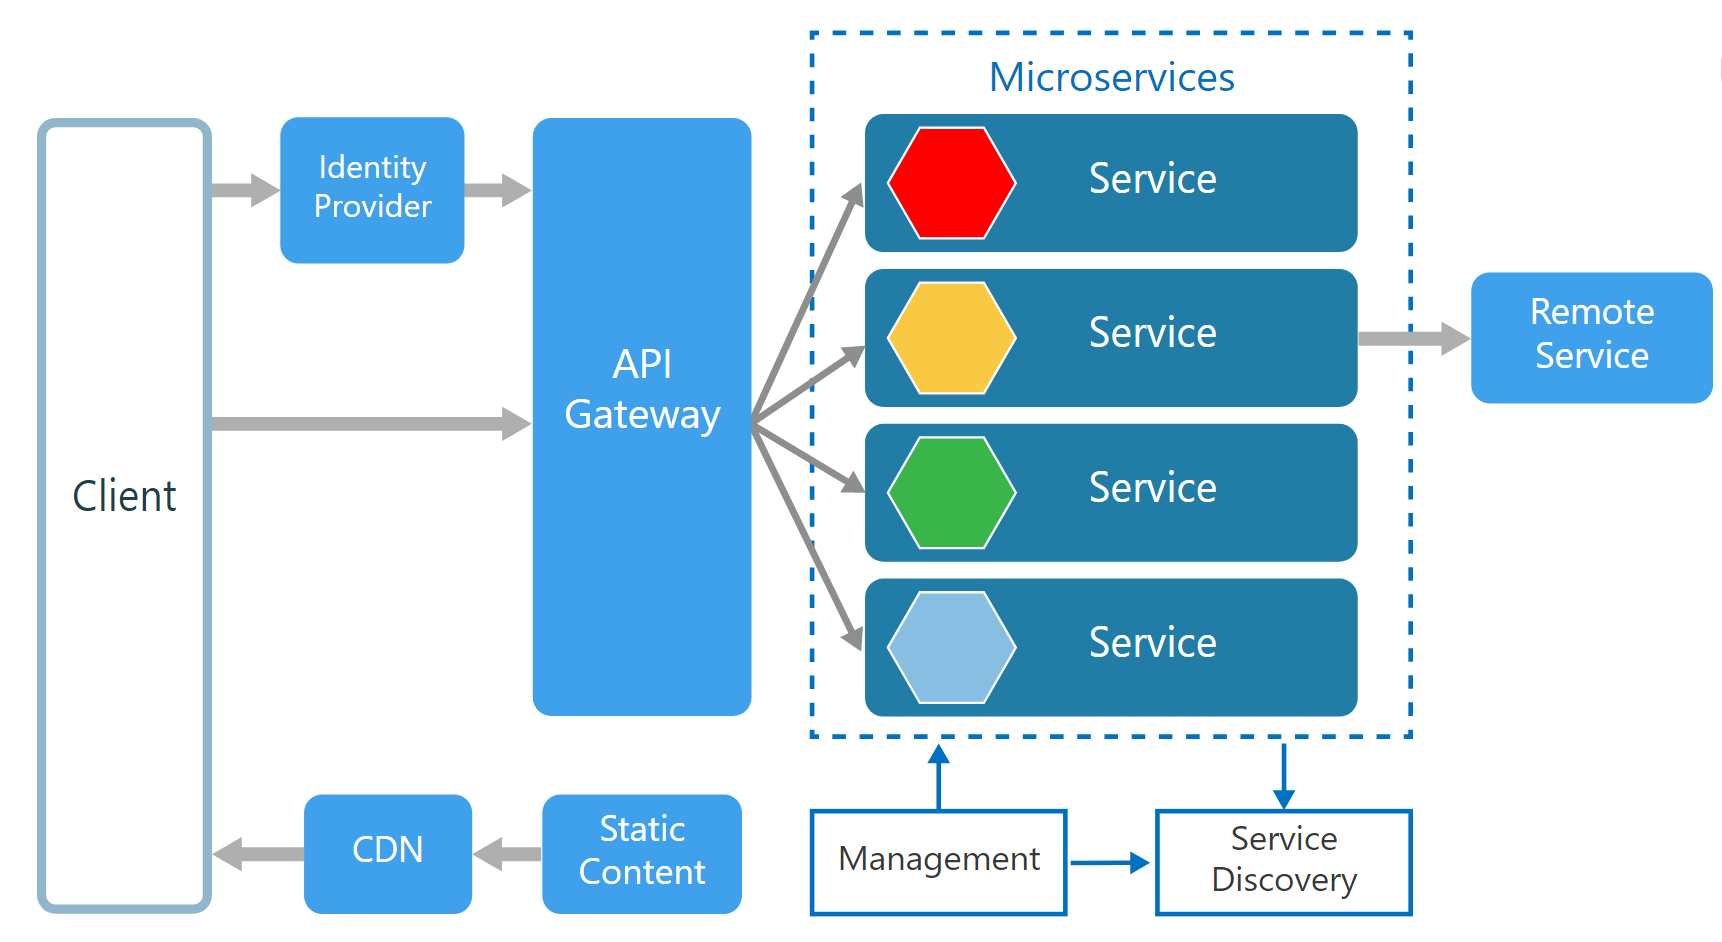 Service Architektur gemäss Microsoft Azure